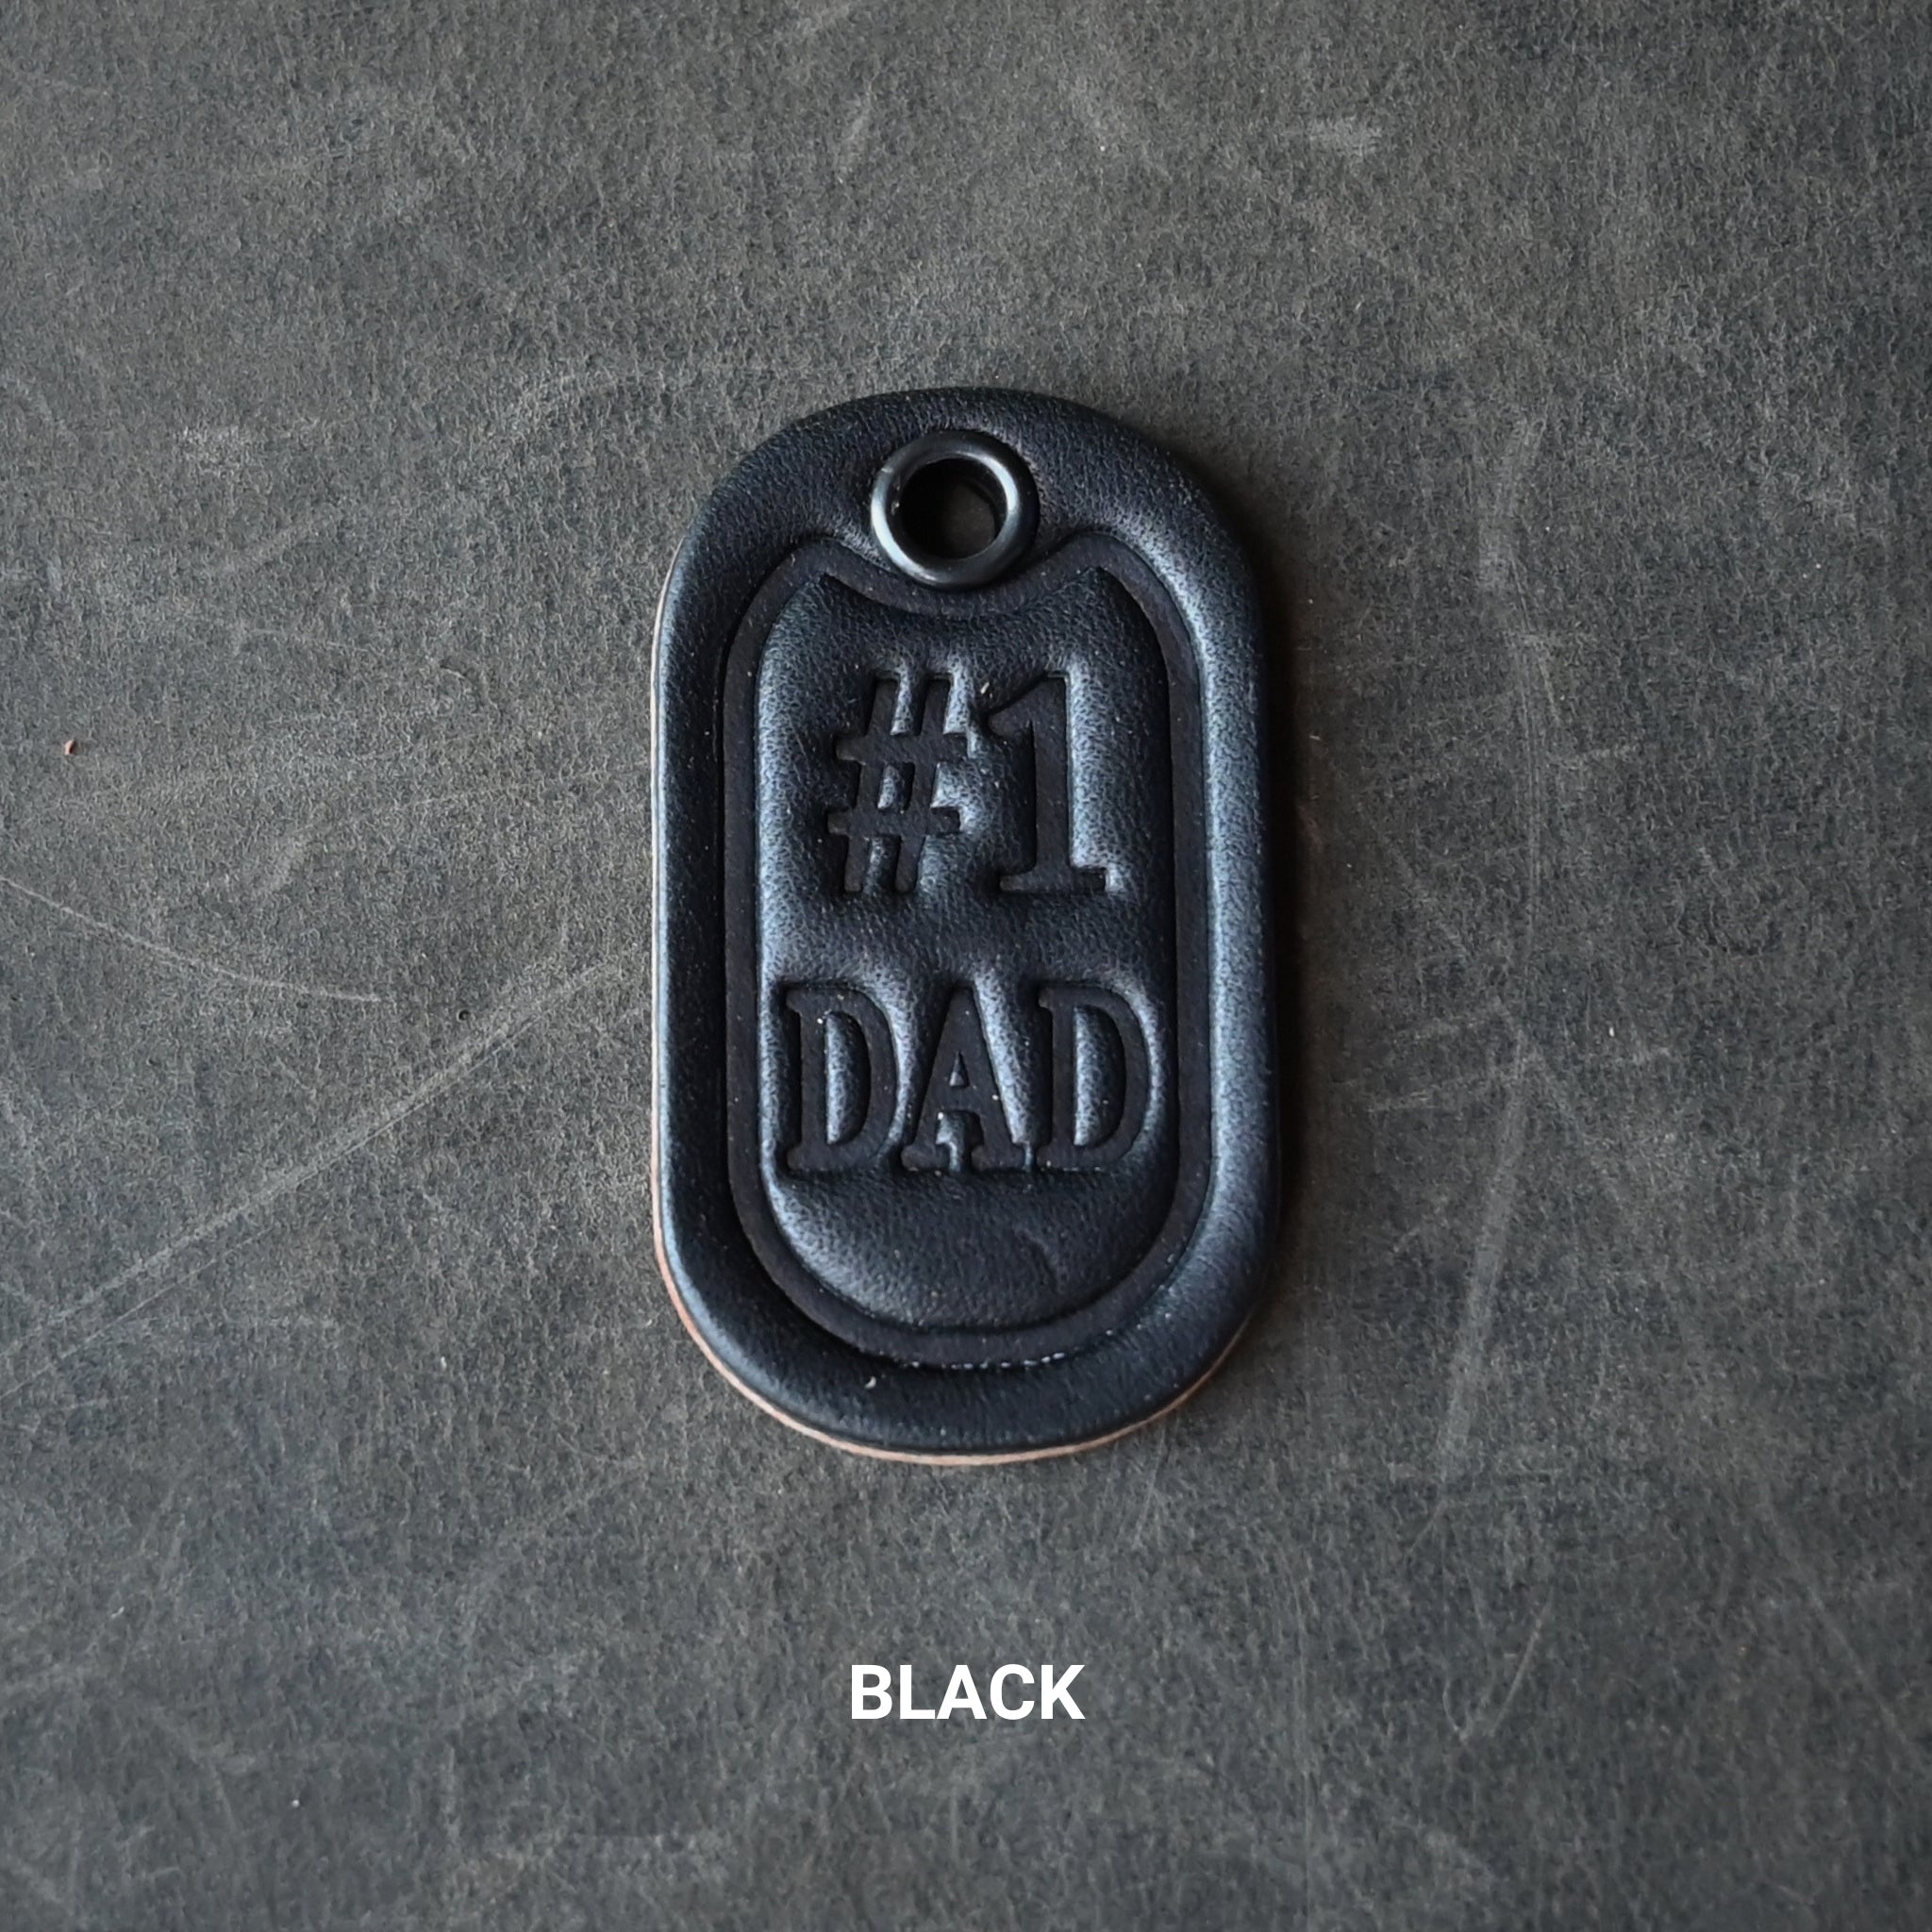 #1 Dad Leather Key Tag